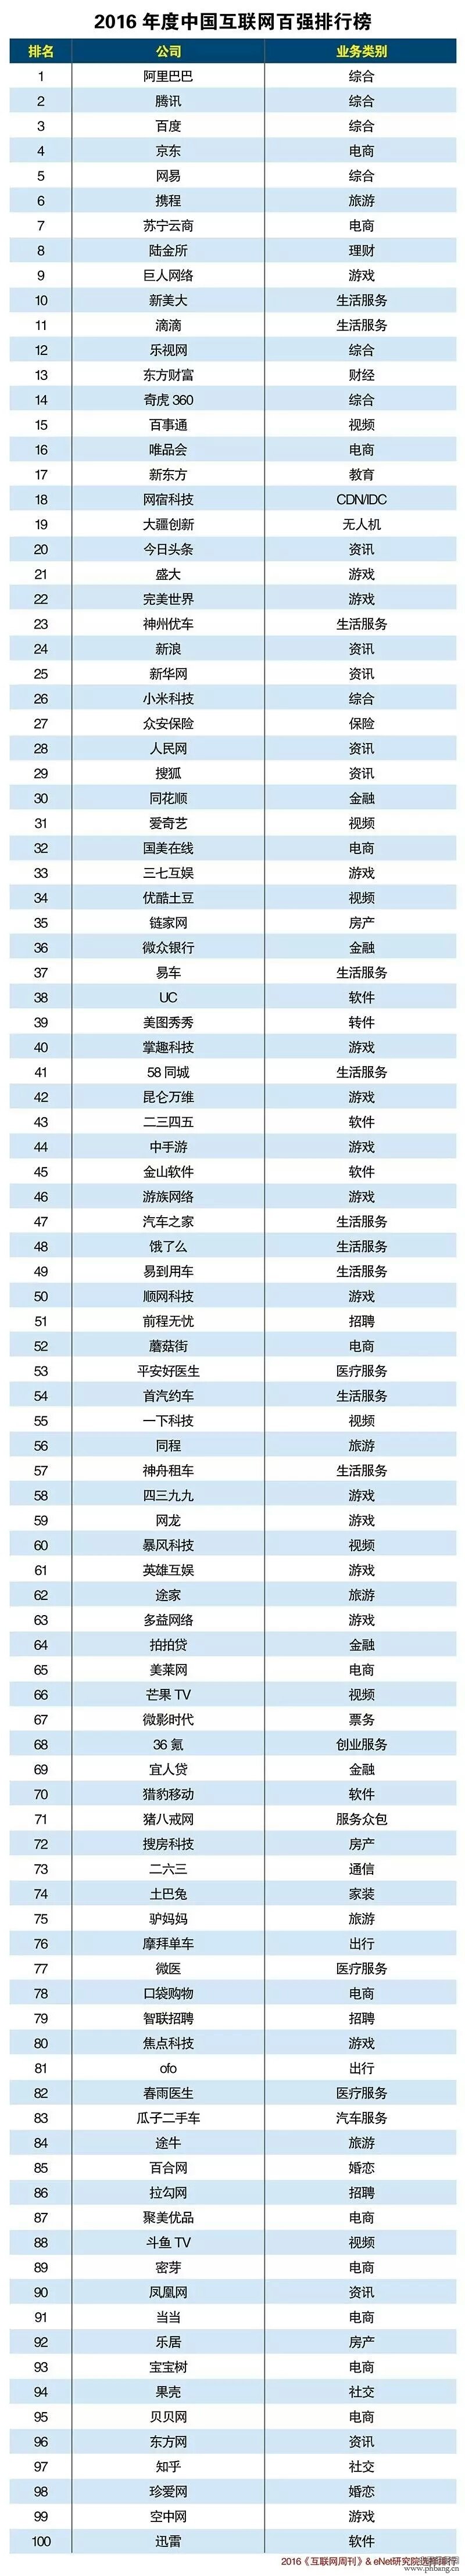 2016中国互联网百强排行榜